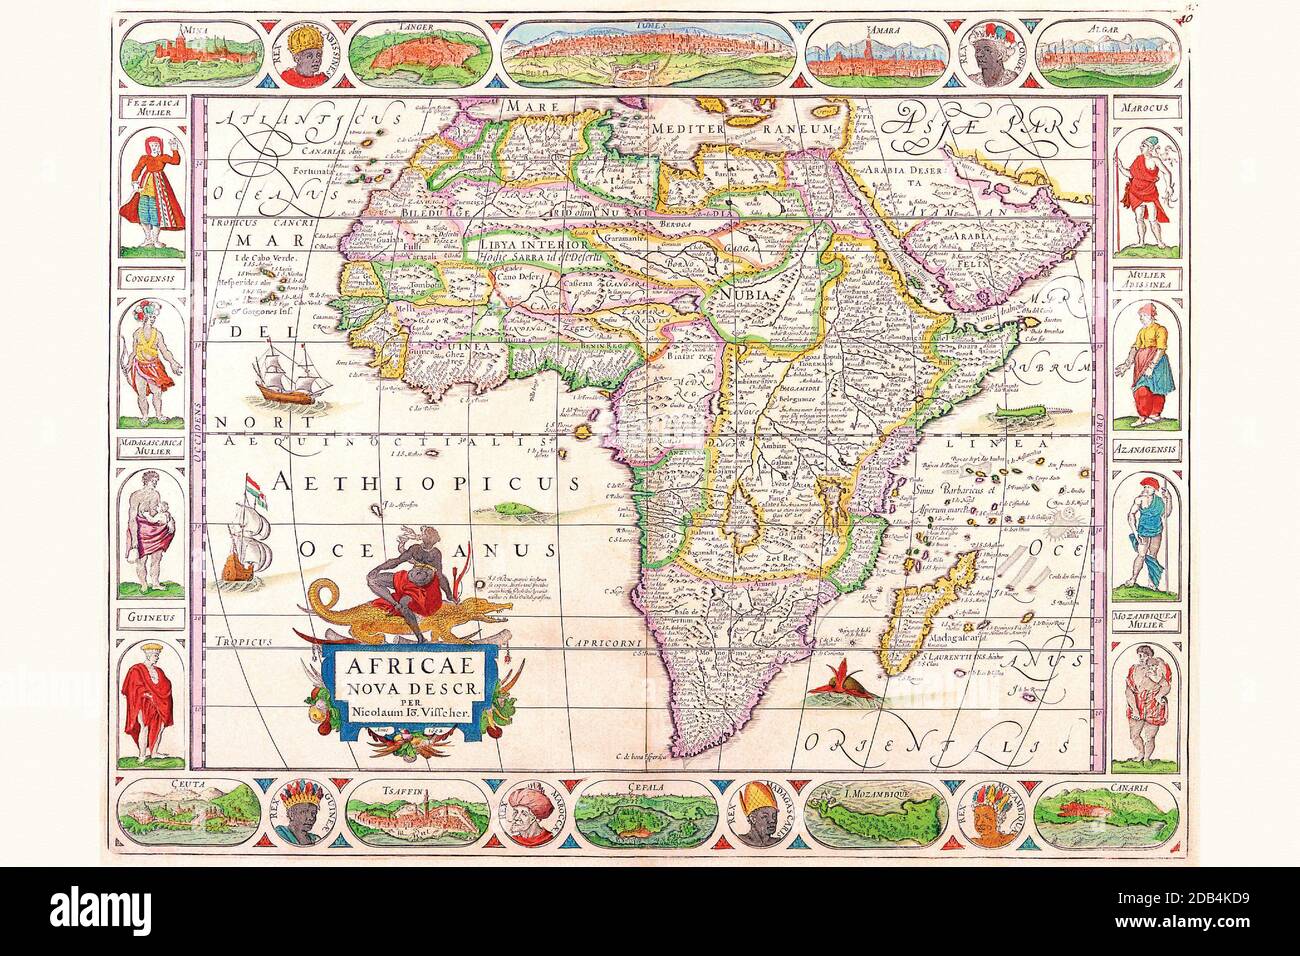 La familia Visscher fue la fuerza dominante en la elaboración de mapas en el apogeo de la era Dorada de la cartografía holandesa. Eran conocidos en toda Europa por su avanzado conocimiento geográfico y por la ornamentación artística de sus obras. Fueron una de las principales editoriales en Amsterdam durante casi un siglo. Foto de stock